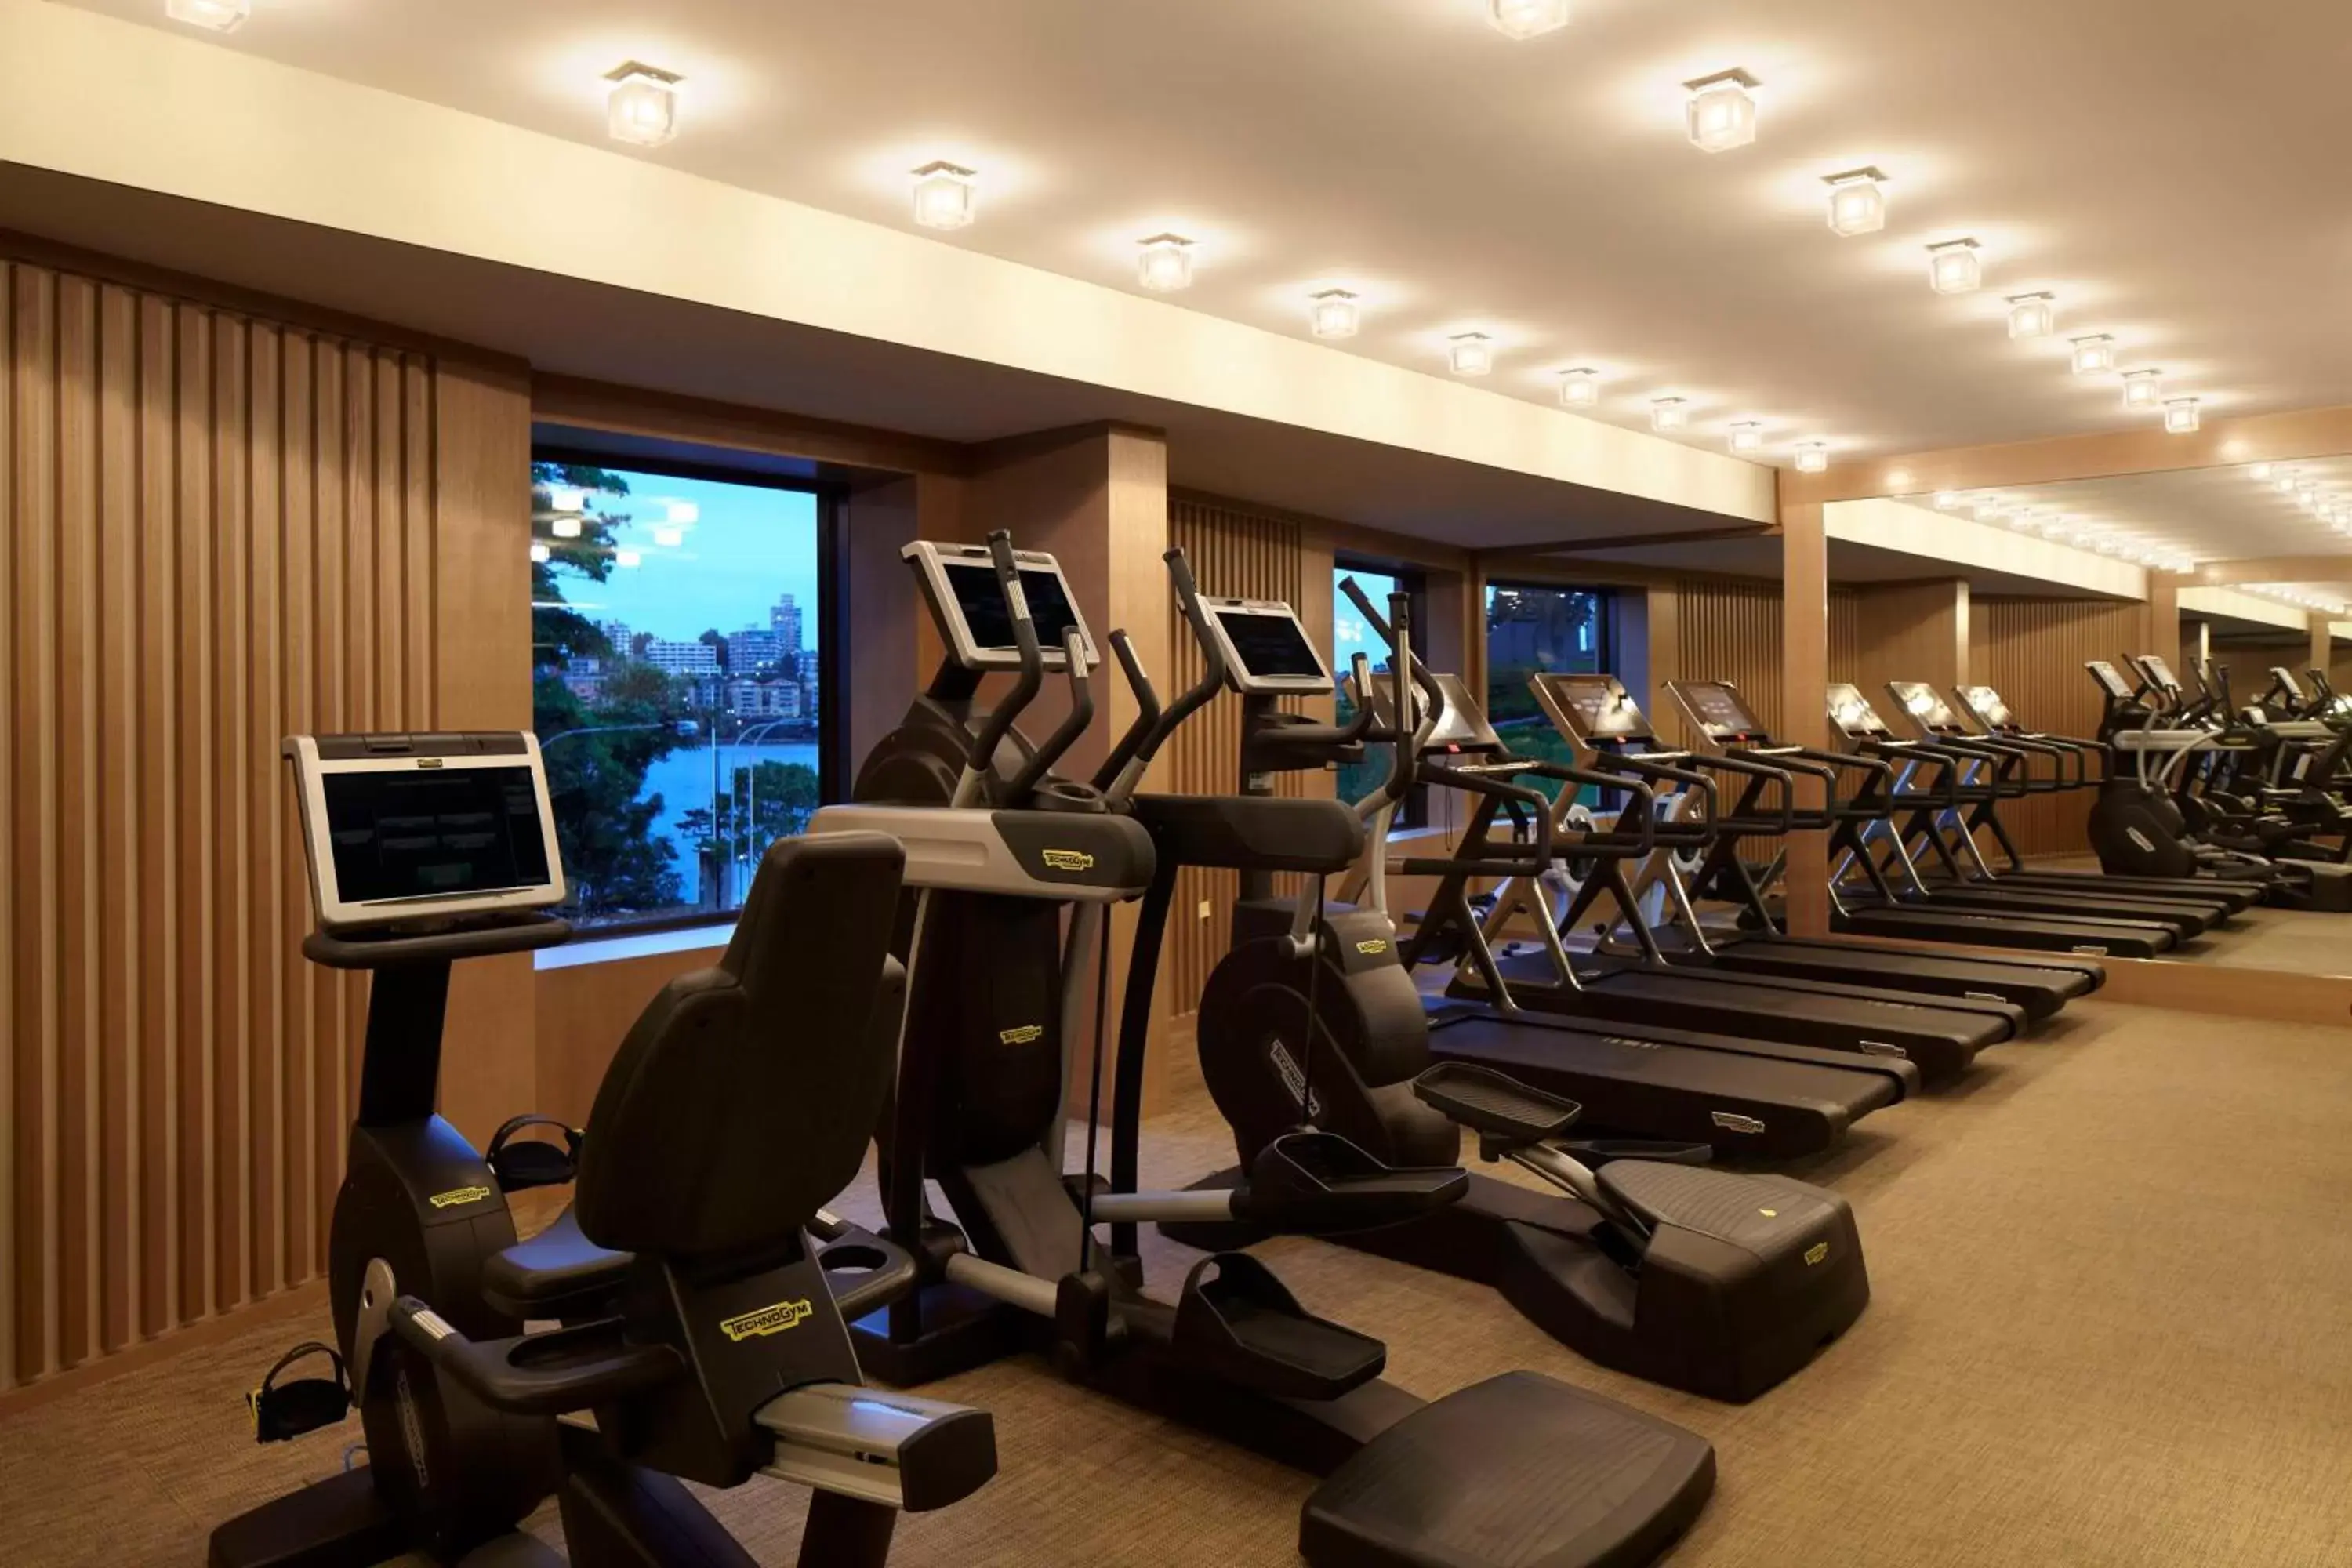 Fitness centre/facilities, Fitness Center/Facilities in Park Hyatt Sydney